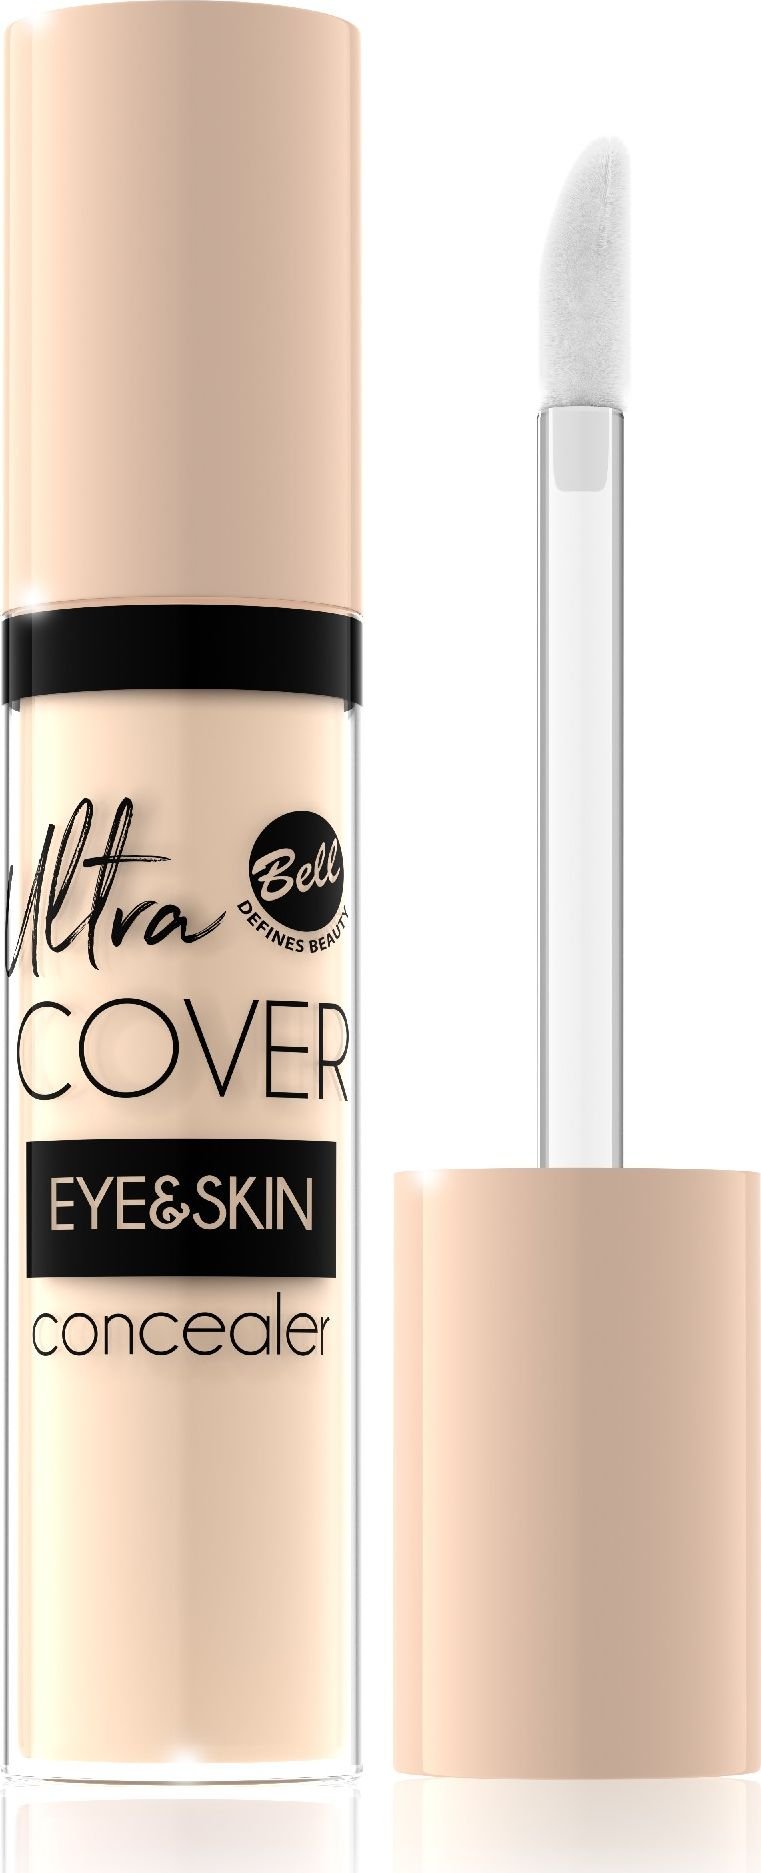 Bell Egalizator intens opac lichid Ultra Cover Eye & Skin No. 02 Light Sand 5g